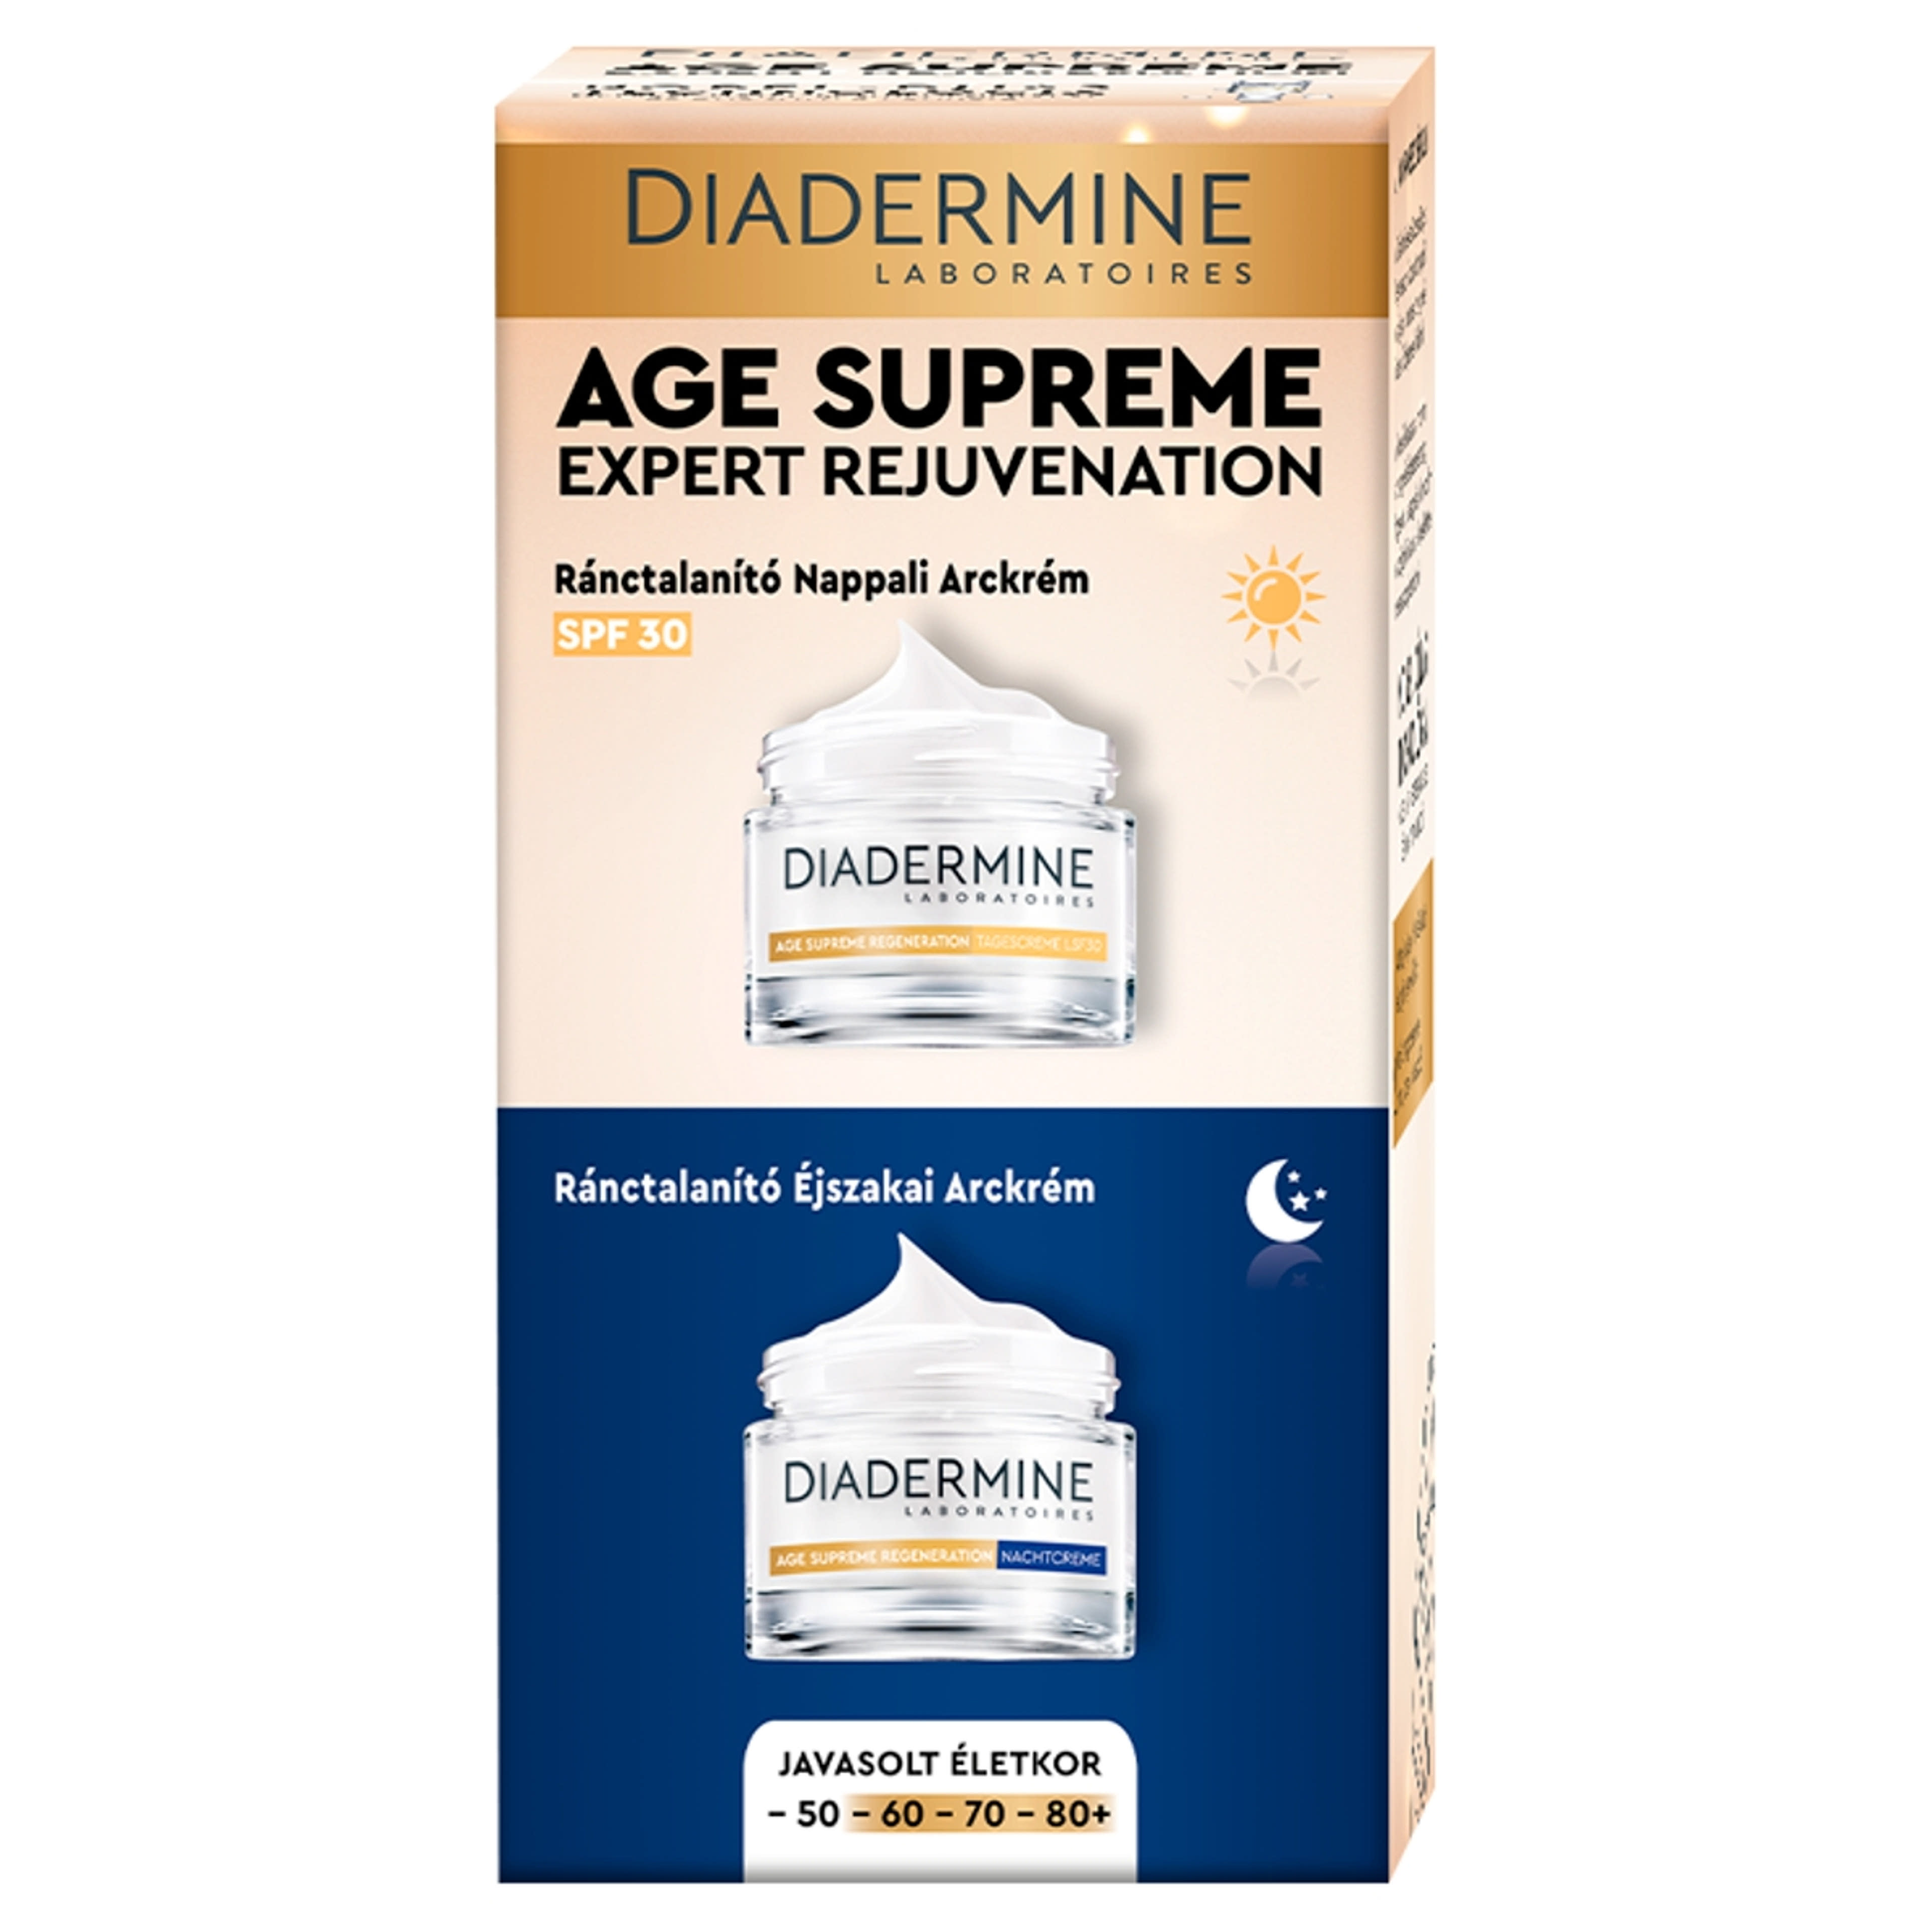 Diadermine Age Supreme nappali & éjszakai öregedésgátló combipack 2x50 ml - 100 ml-1